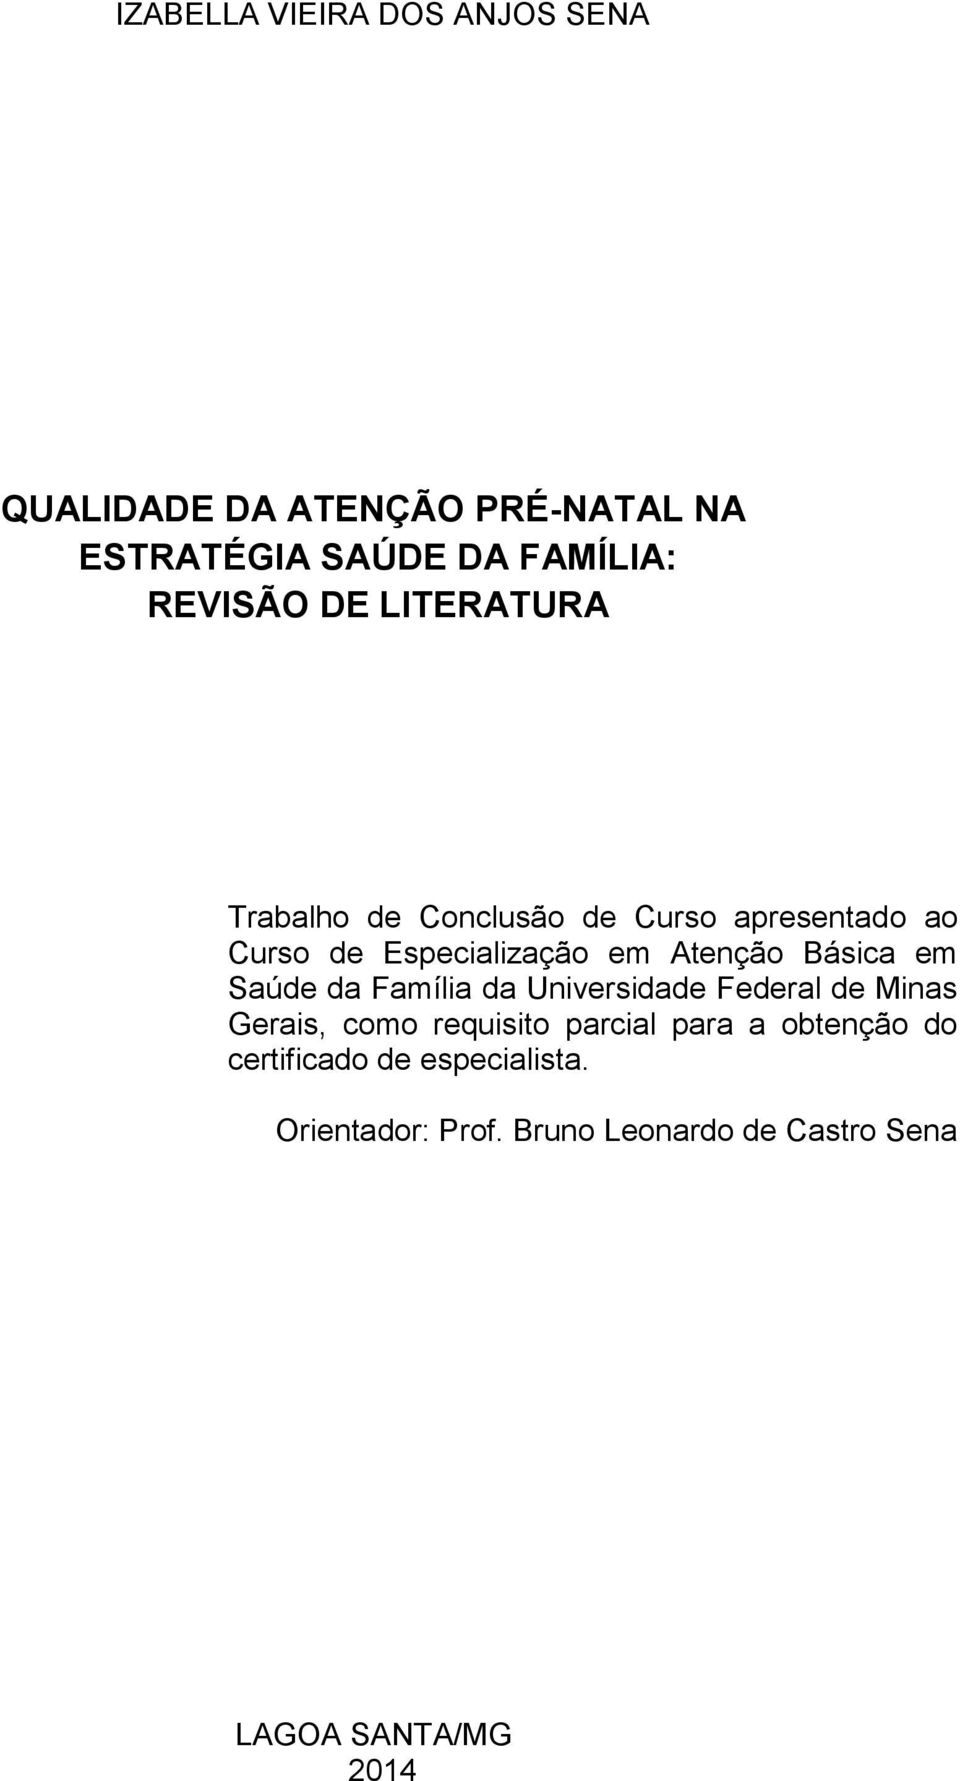 Atenção Básica em Saúde da Família da Universidade Federal de Minas Gerais, como requisito parcial